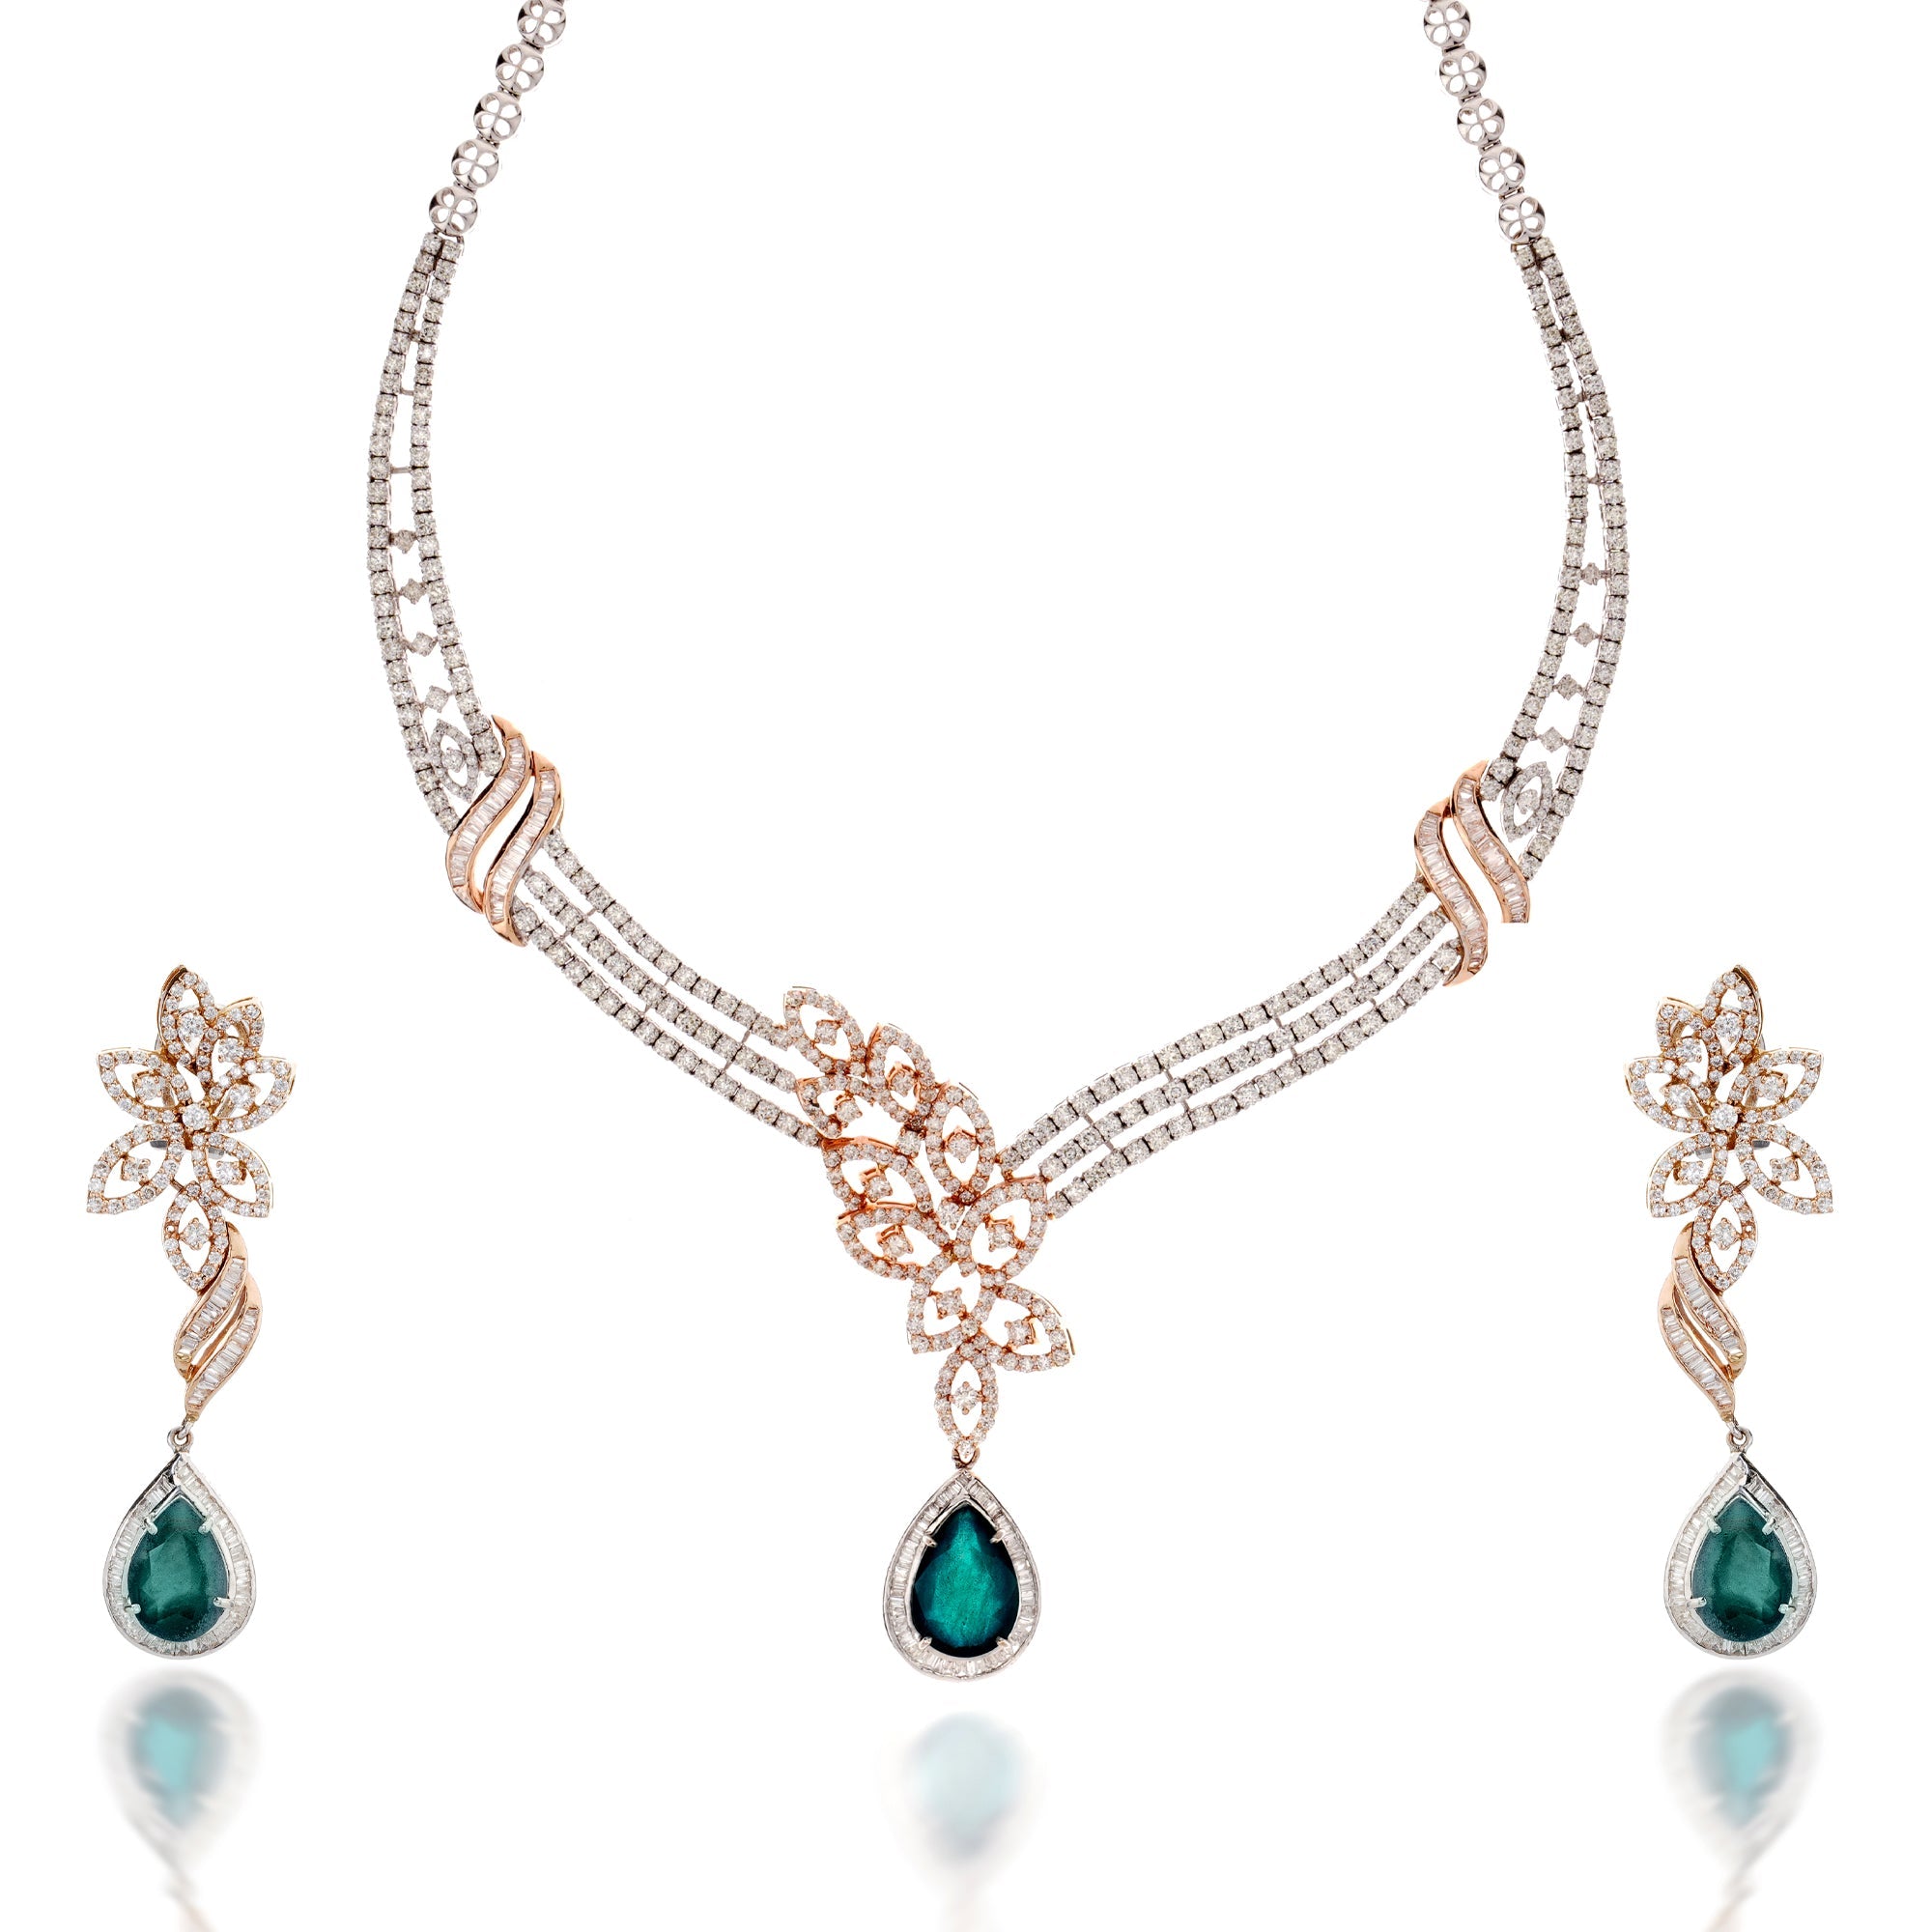 Dual Tone Floral Diamond Necklace Set